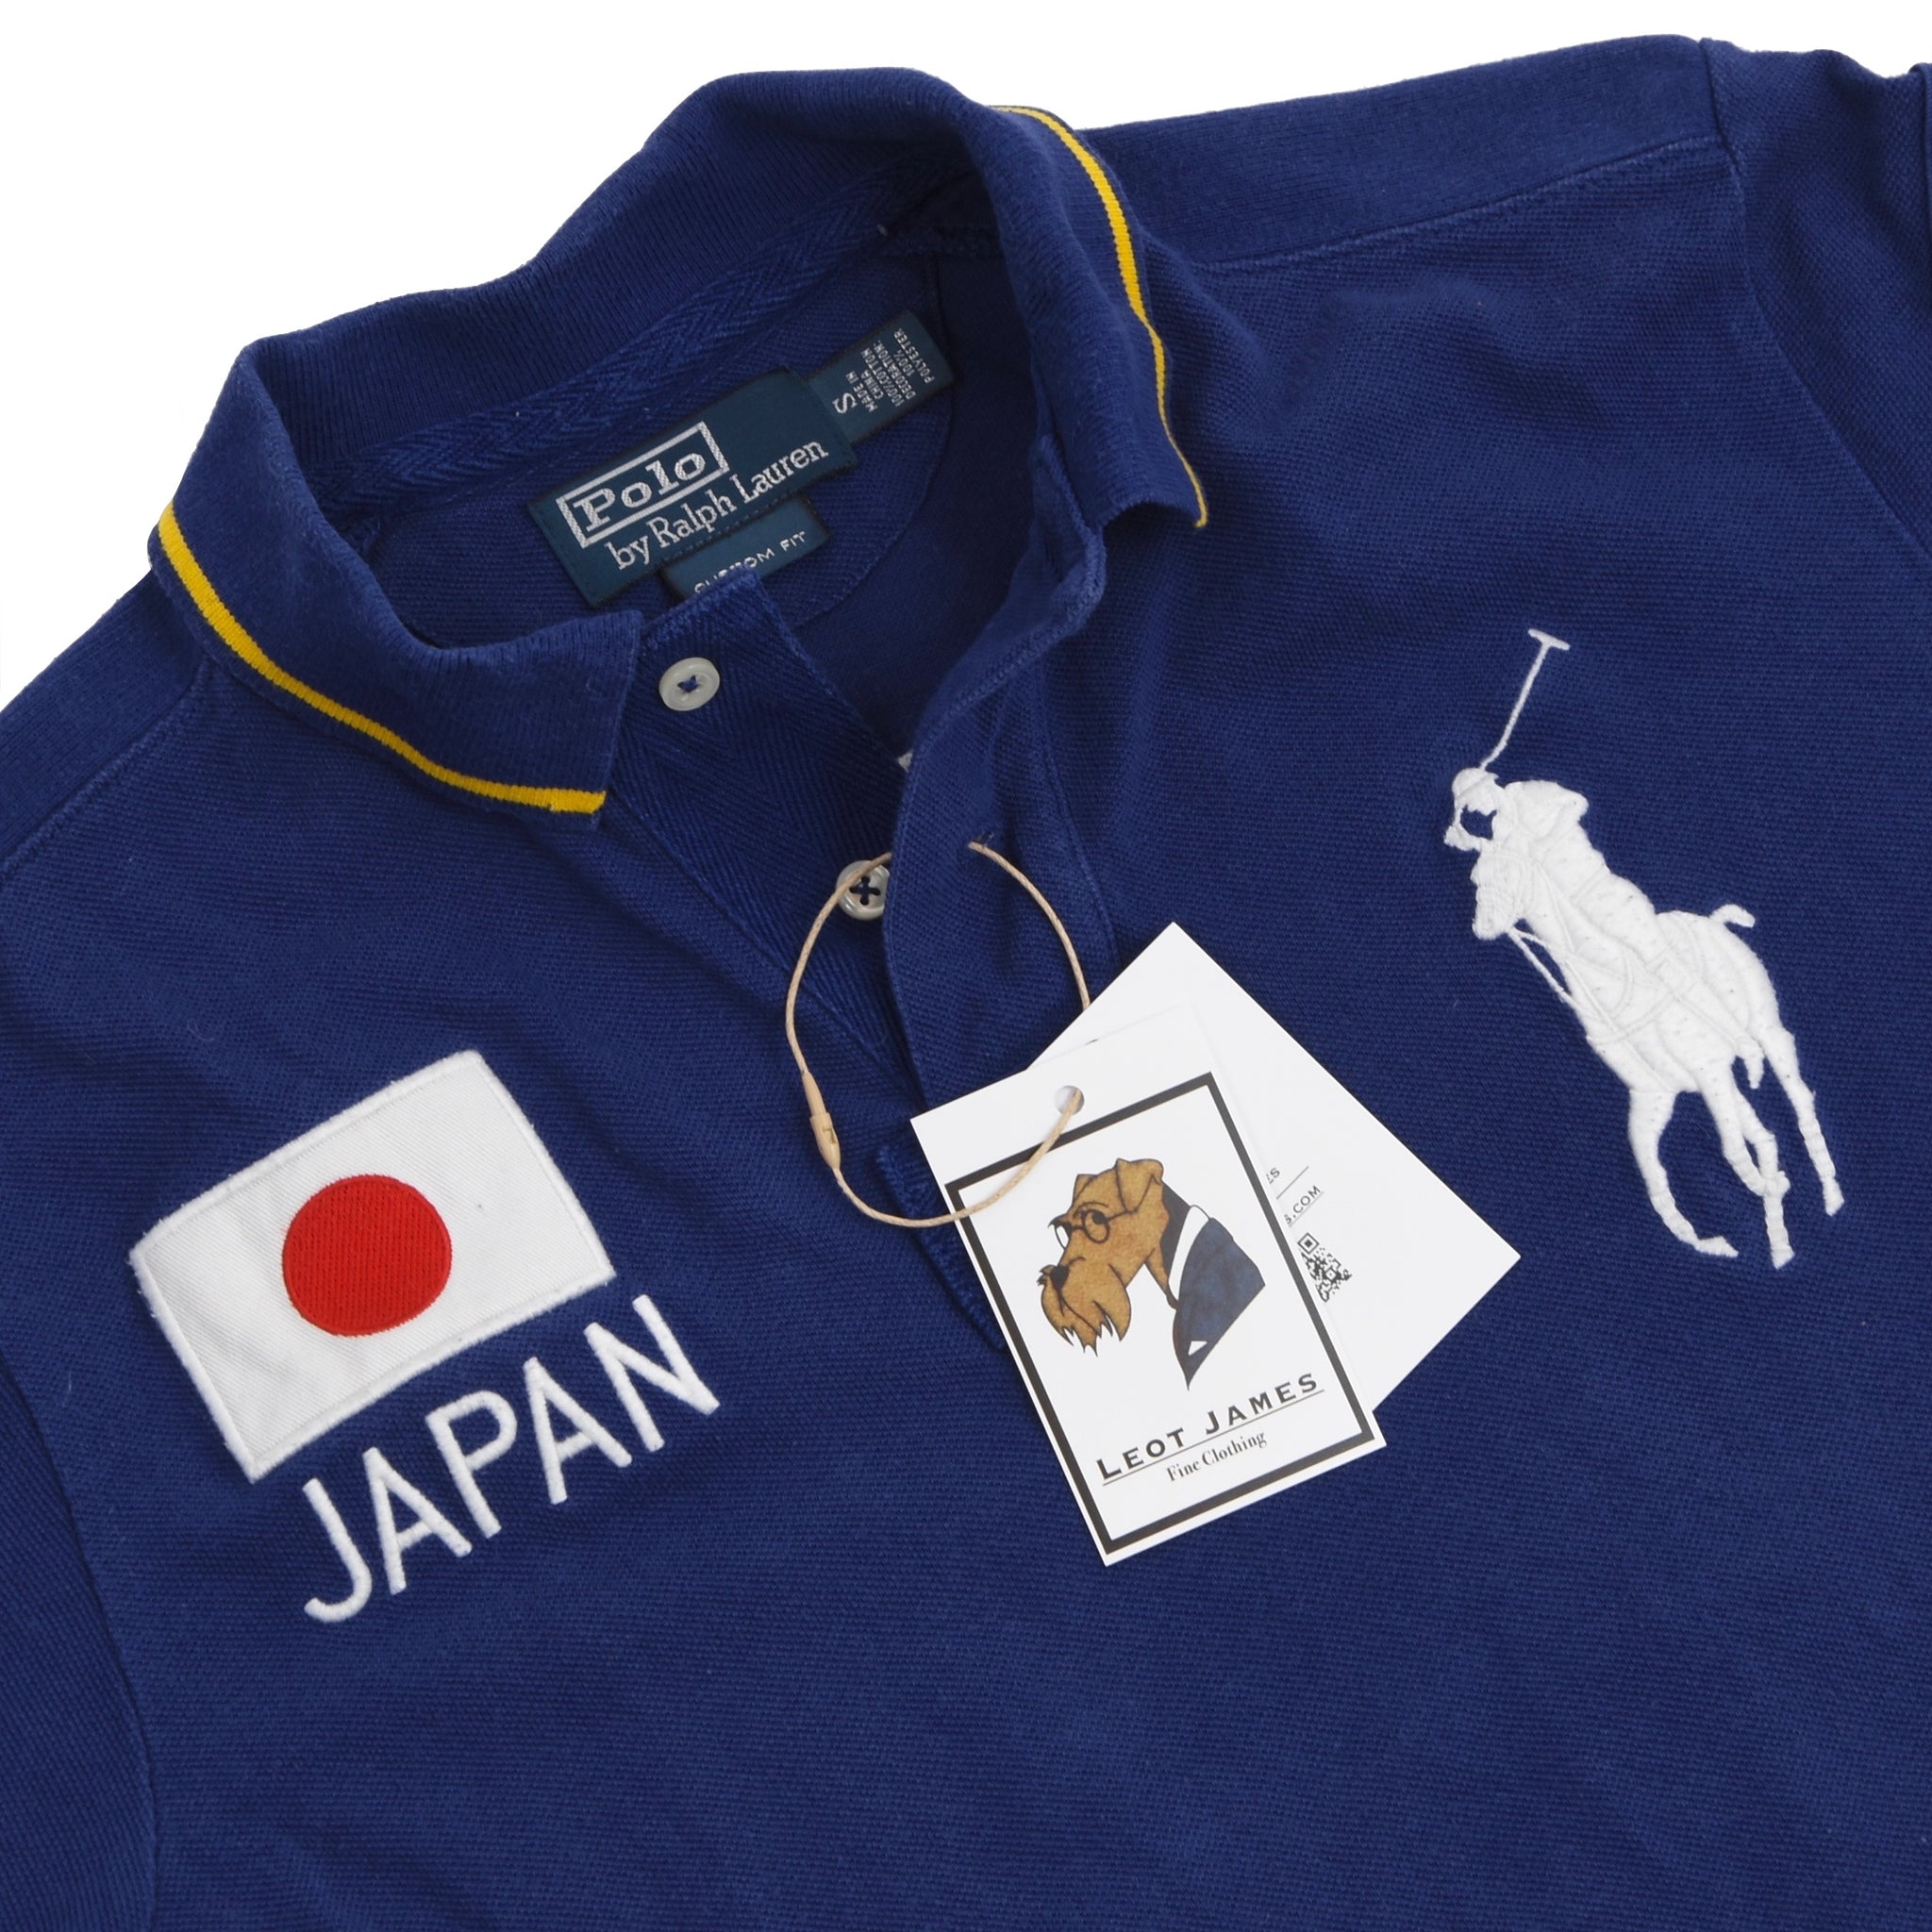 Polo Ralph Lauren Custom Fit Polo Shirt Size S - Japan – Leot James